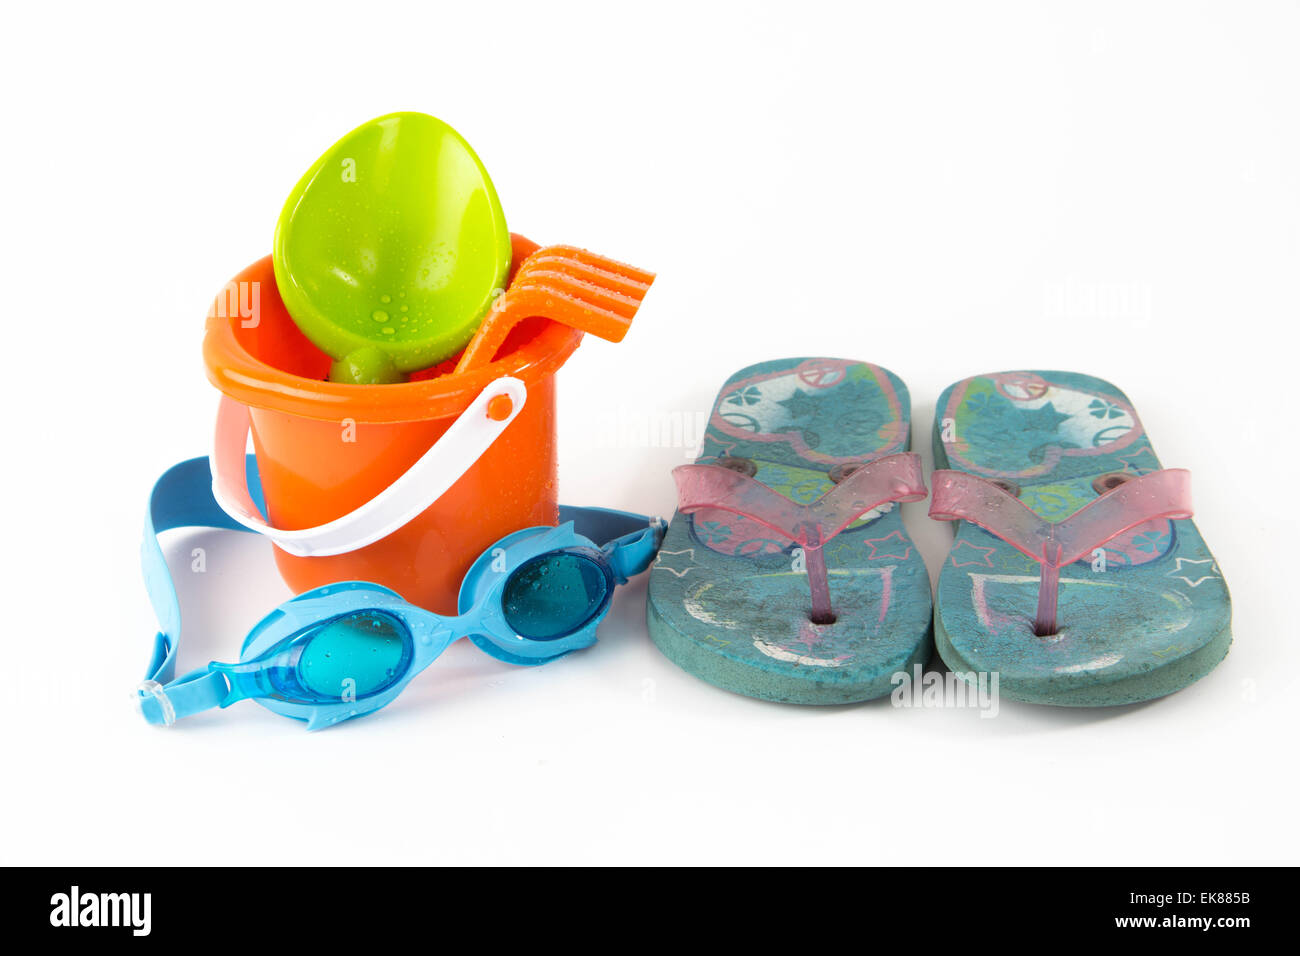 Sommer Spielzeug Eimer mit Spaten Brille Flip Flops isoliert auf weißem  Hintergrund Stockfotografie - Alamy